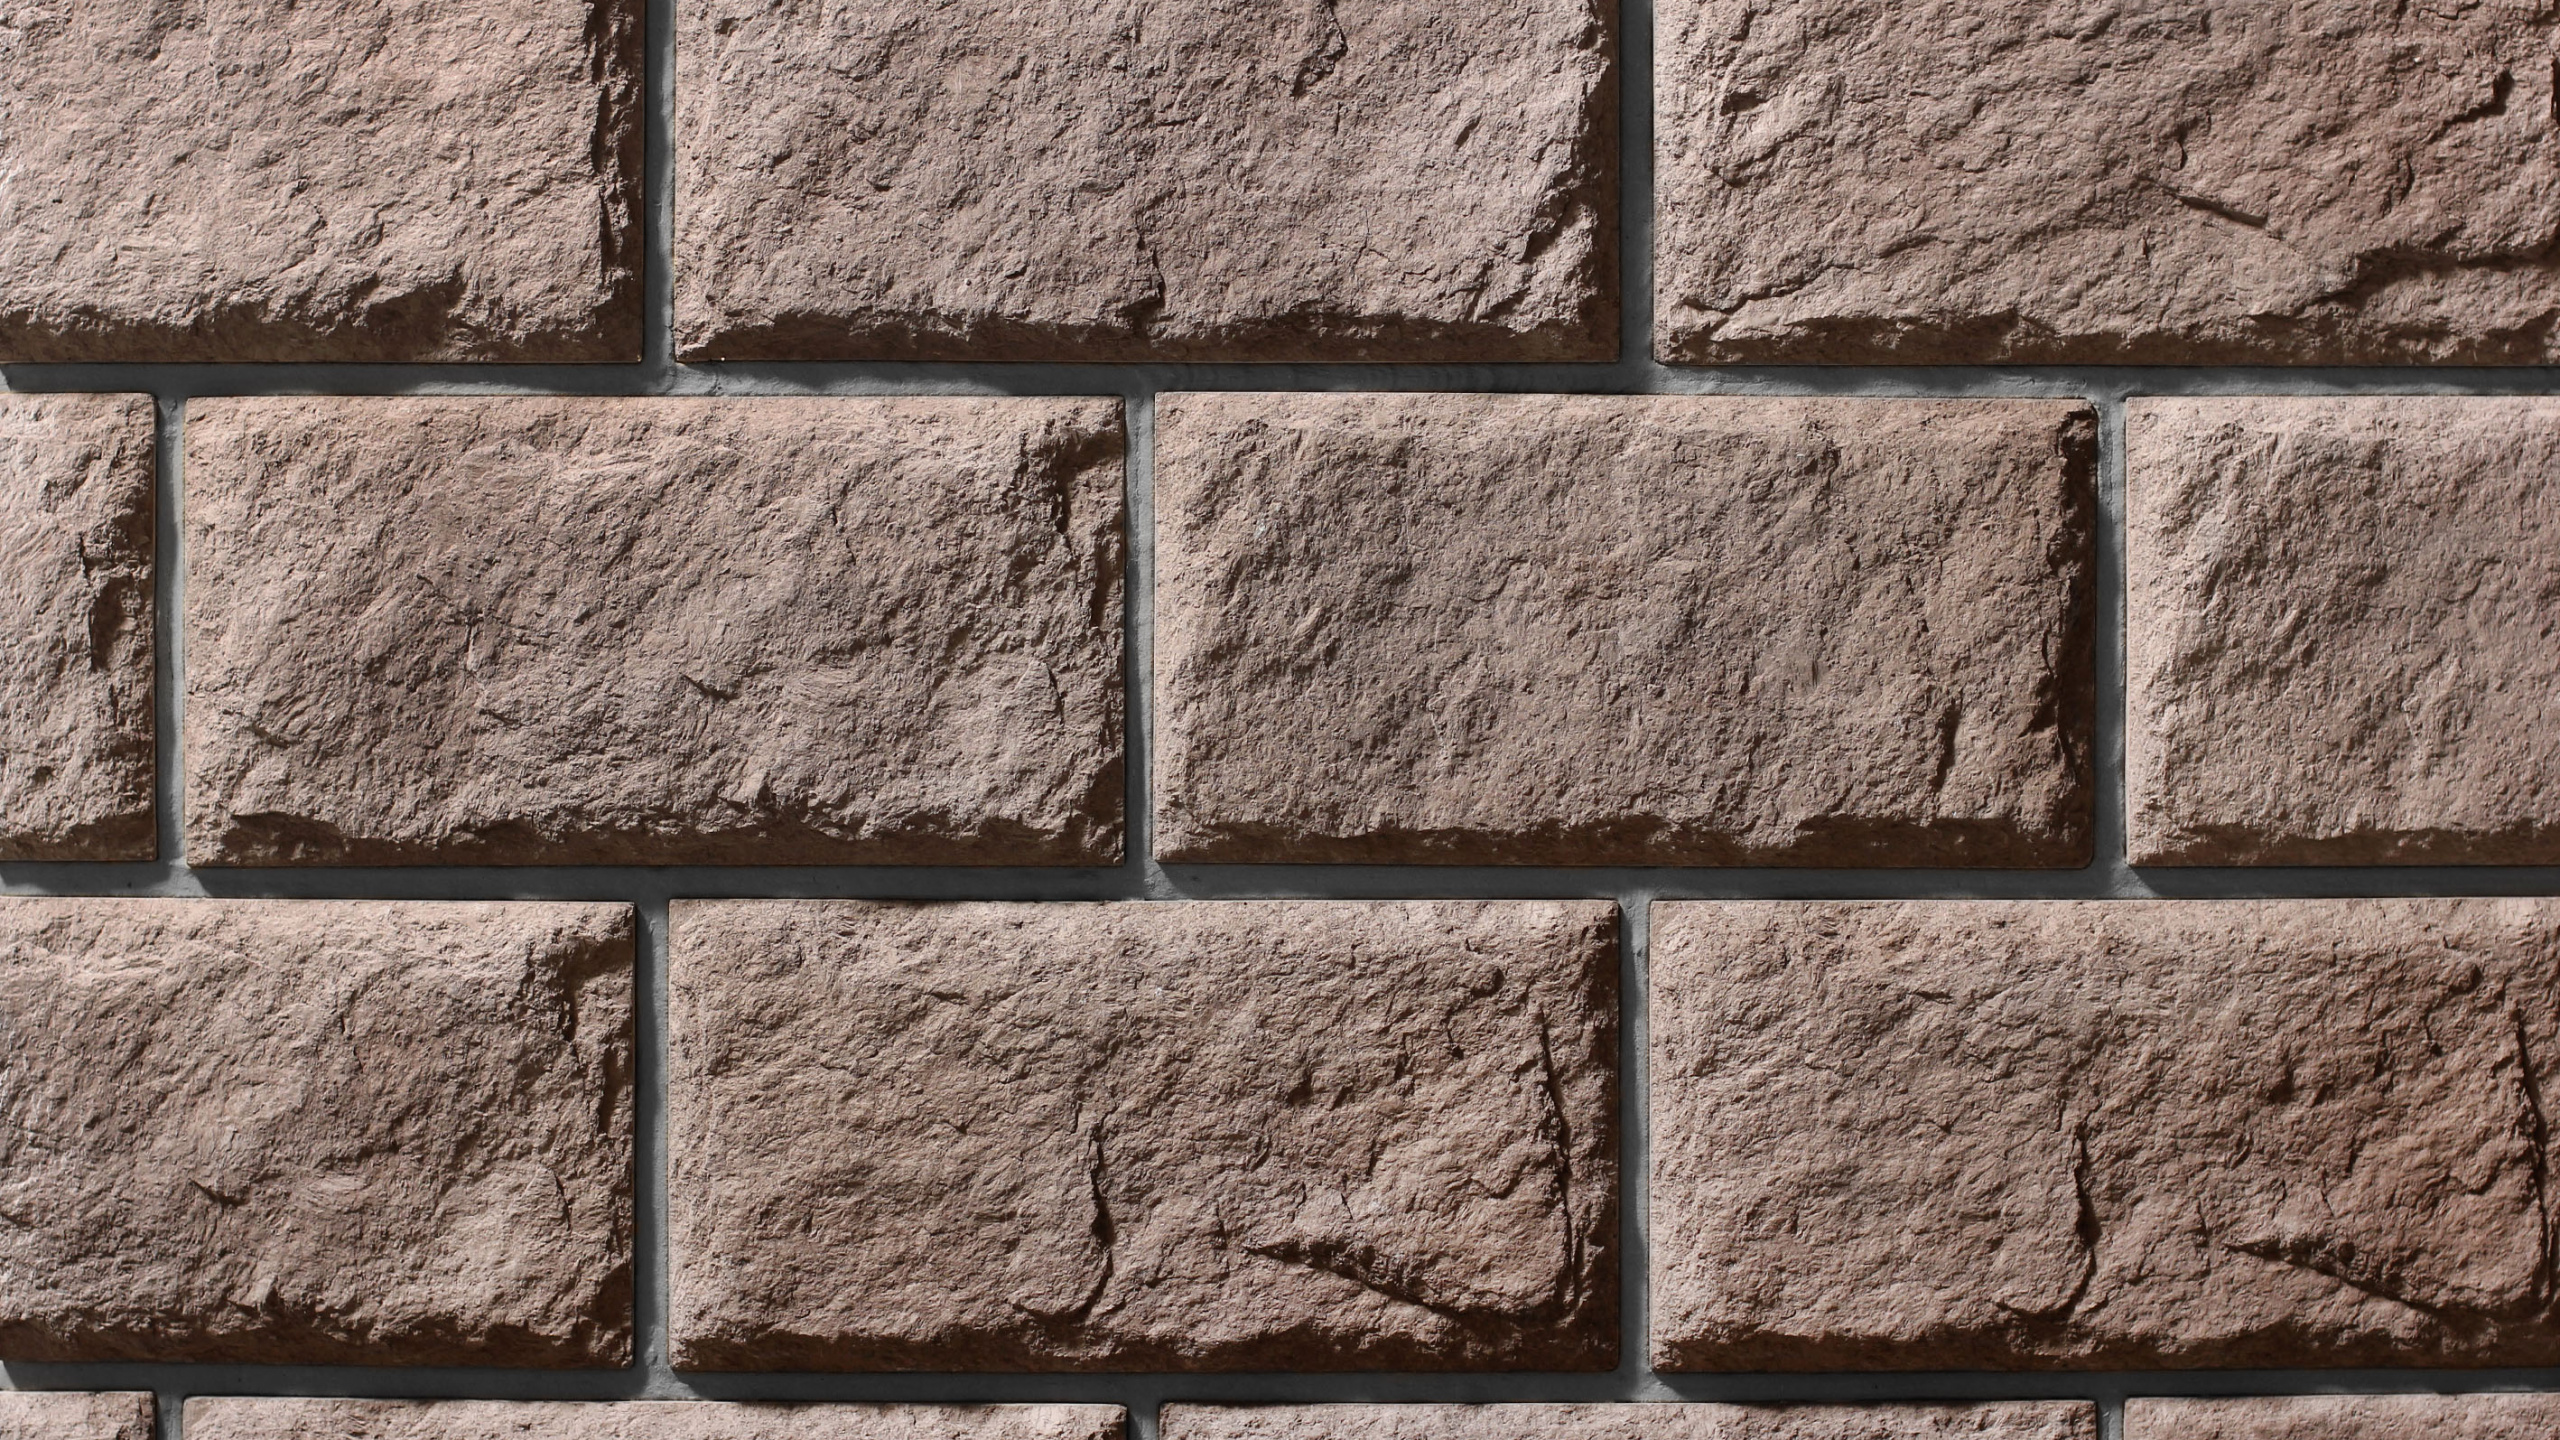 石复, 人造石, 砖, 石壁, 砌砖 壁纸 2560x1440 允许